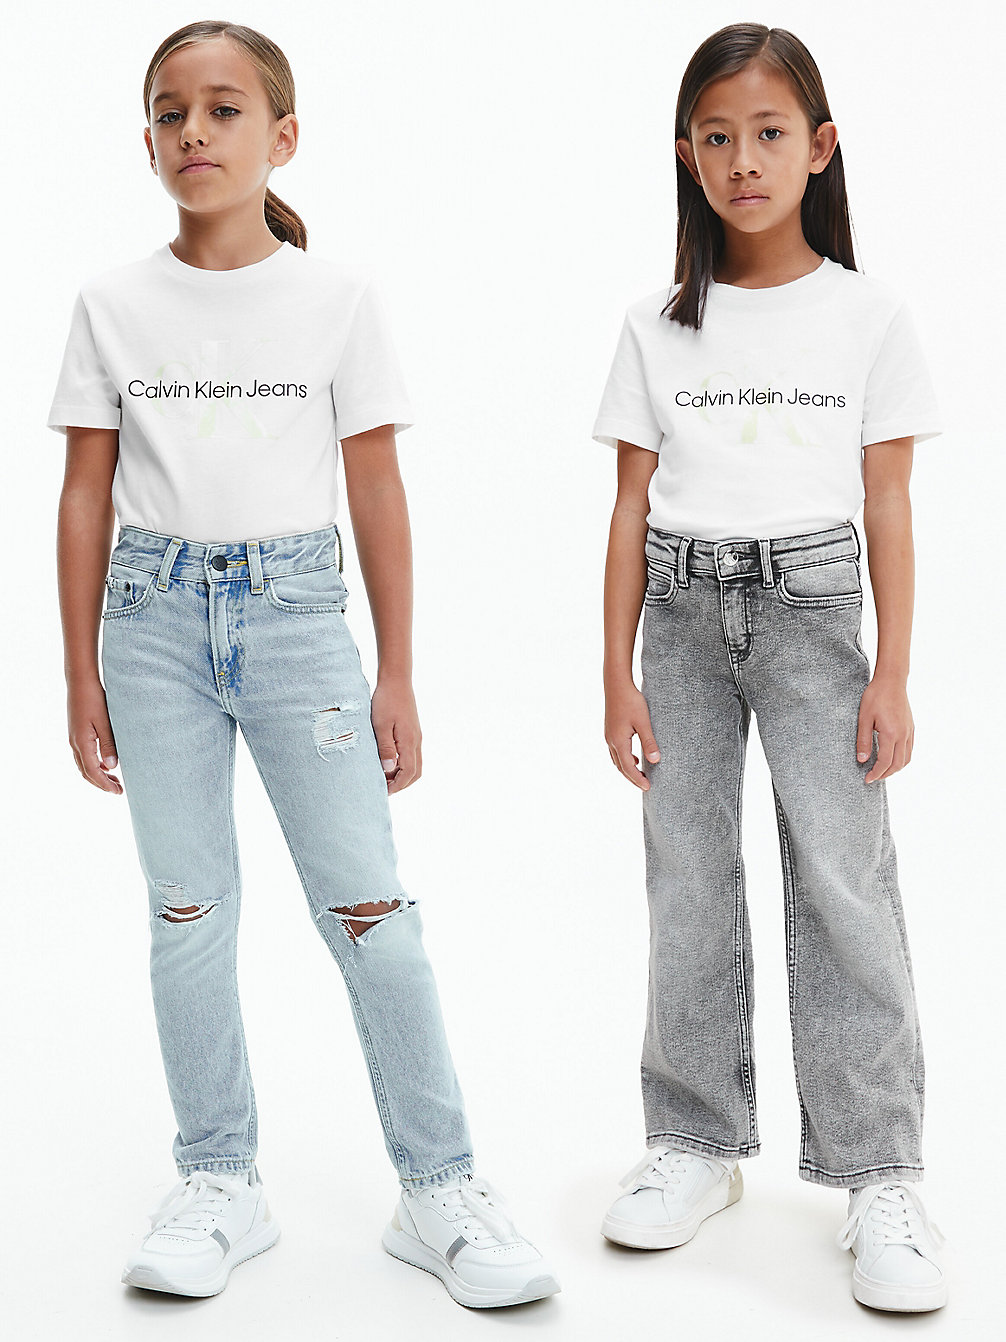 Camiseta Unisex Con Logo > BRIGHT WHITE > undefined kids unisex > Calvin Klein